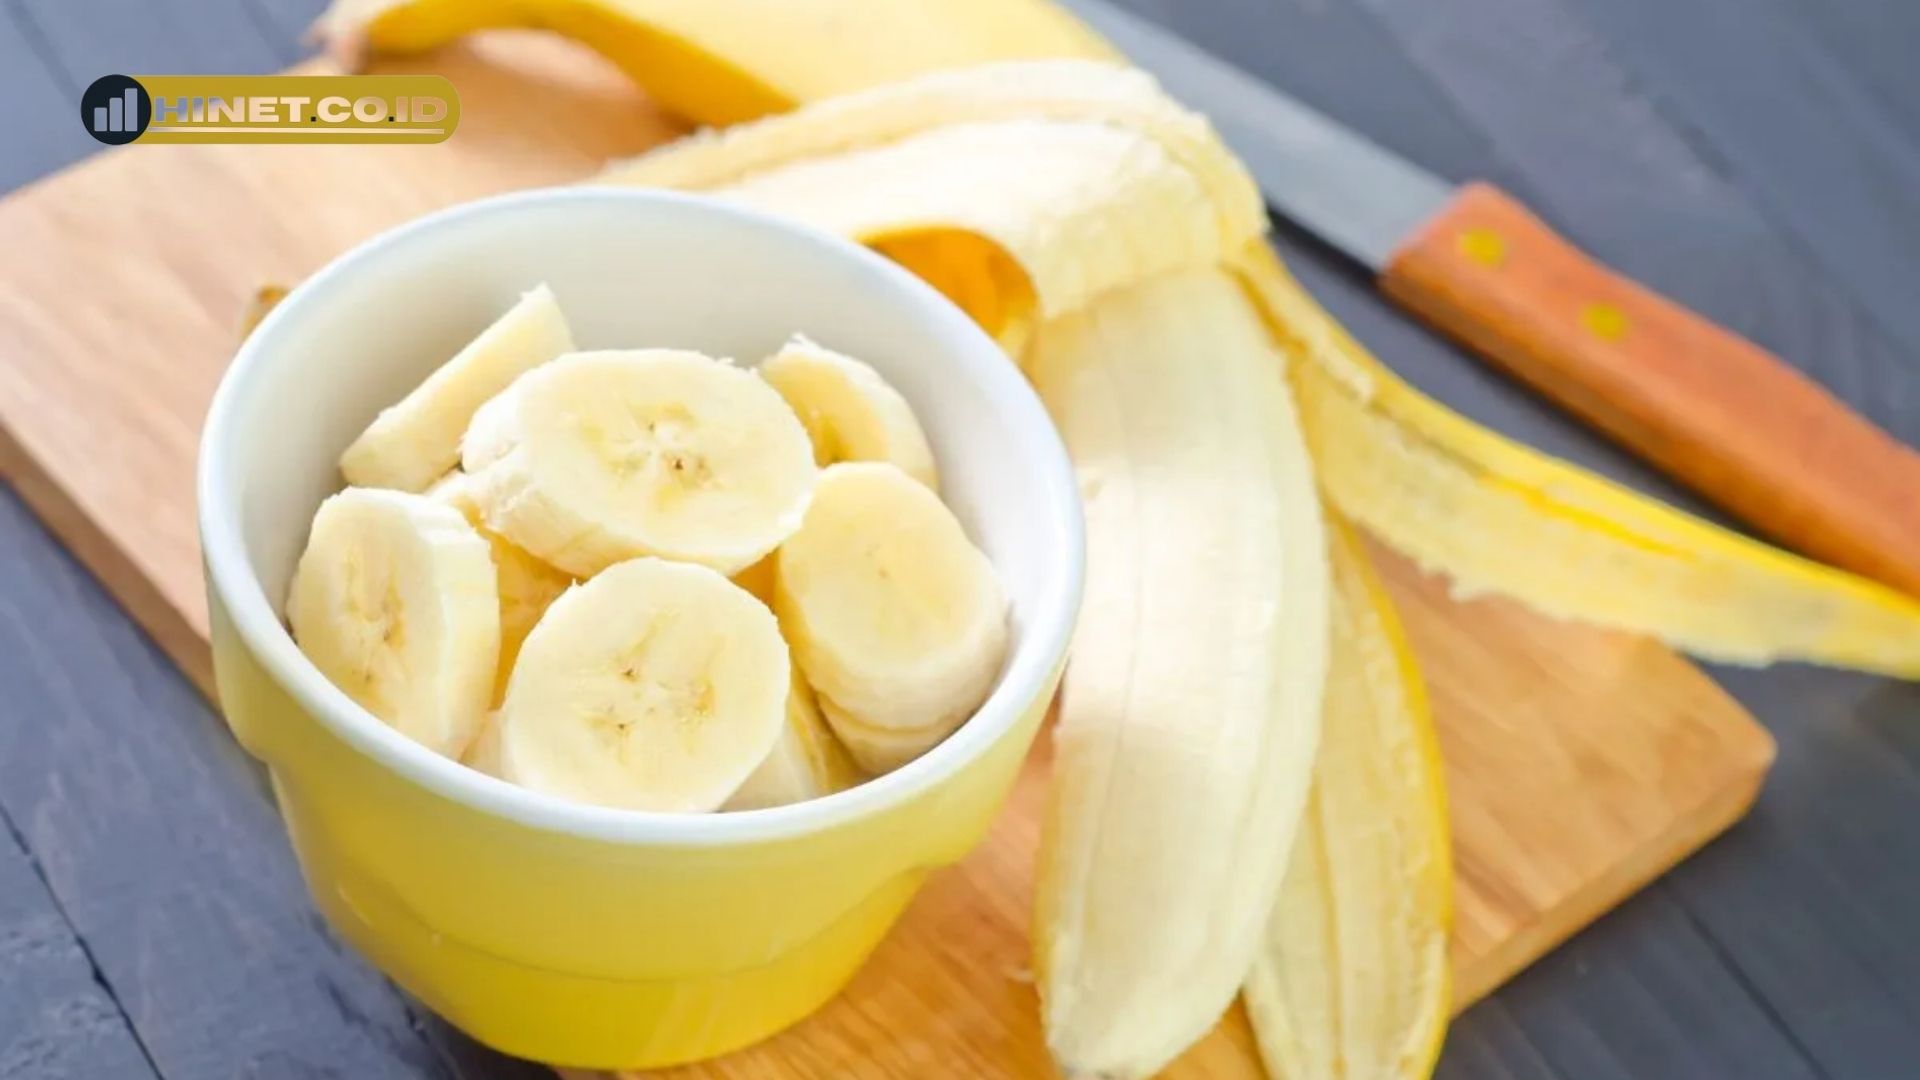 manfaat pisang sunpride